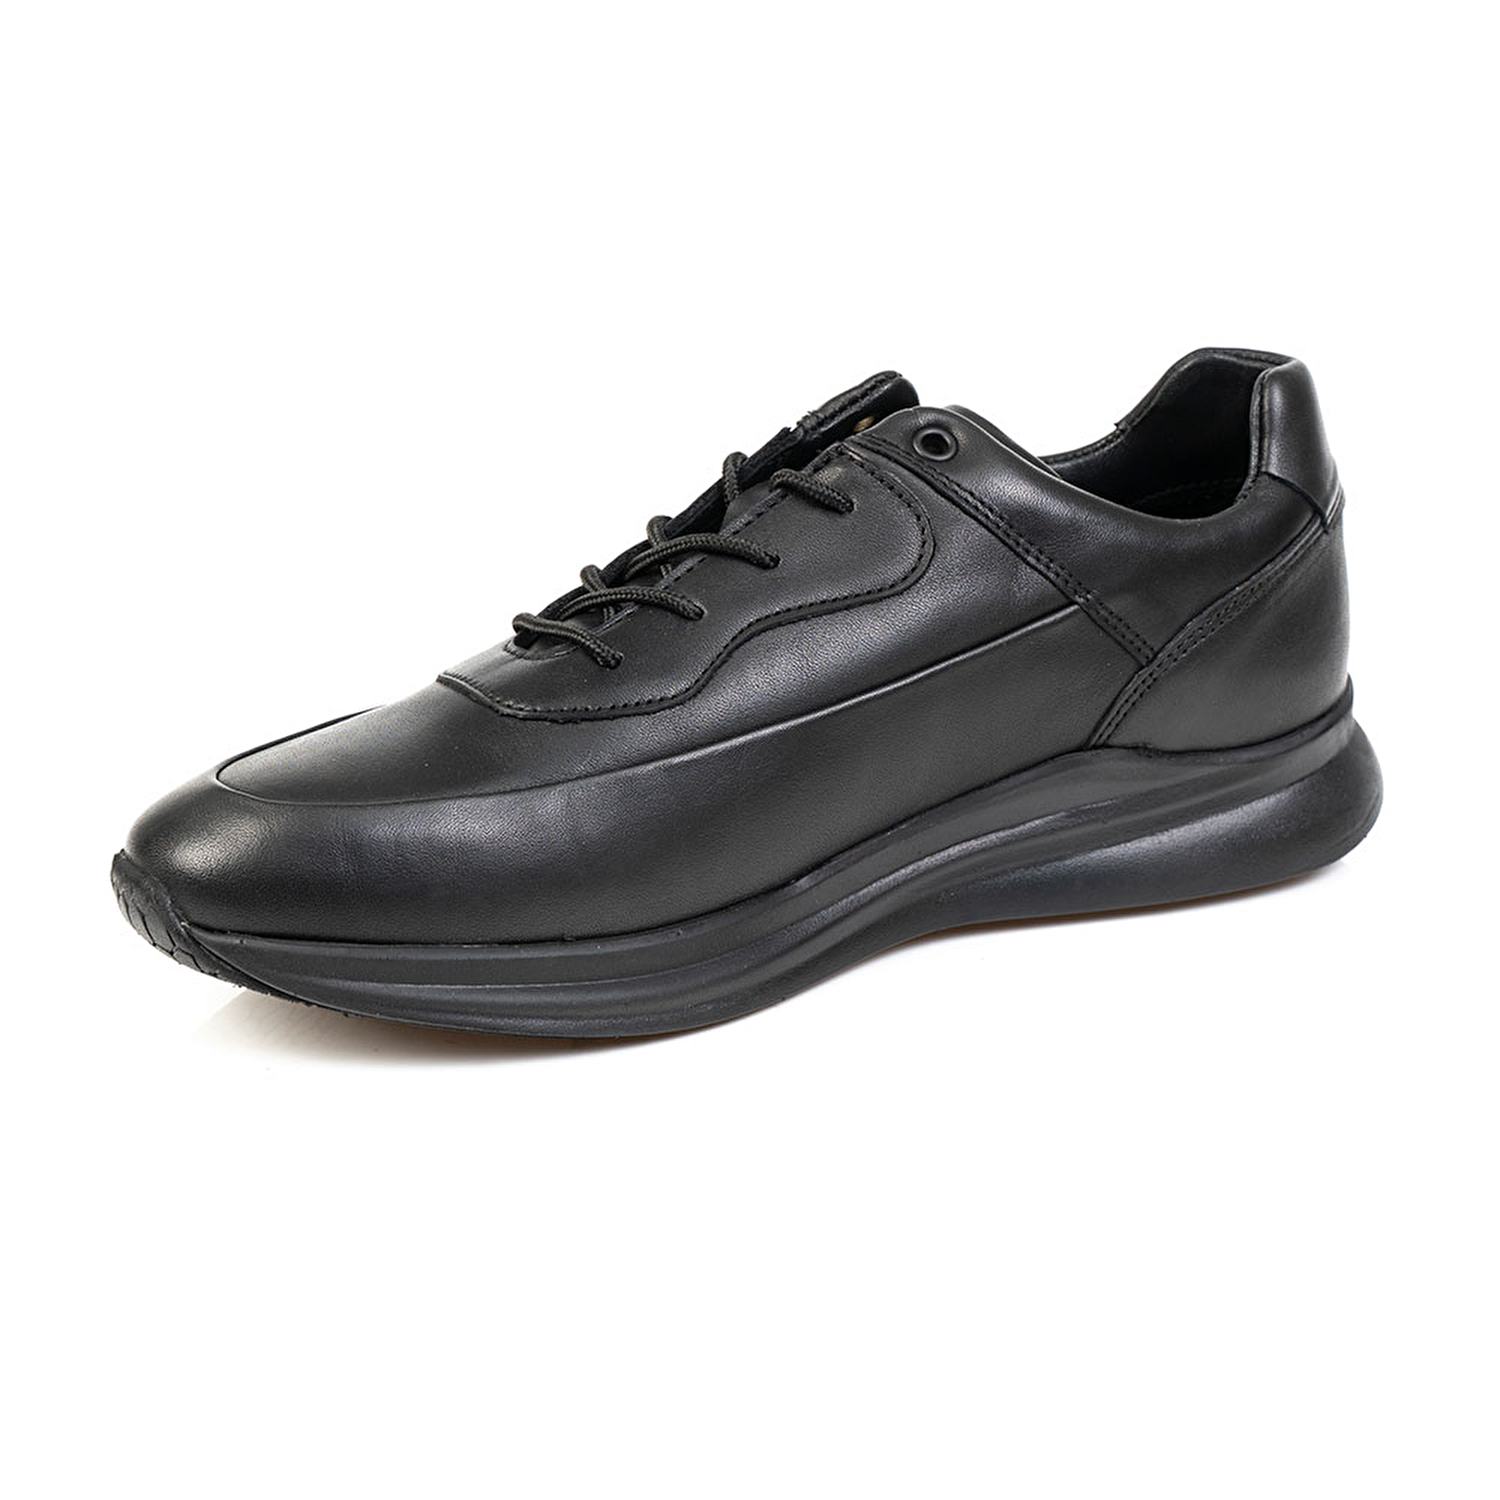 Erkek Ayakkabı Siyah 14511-3